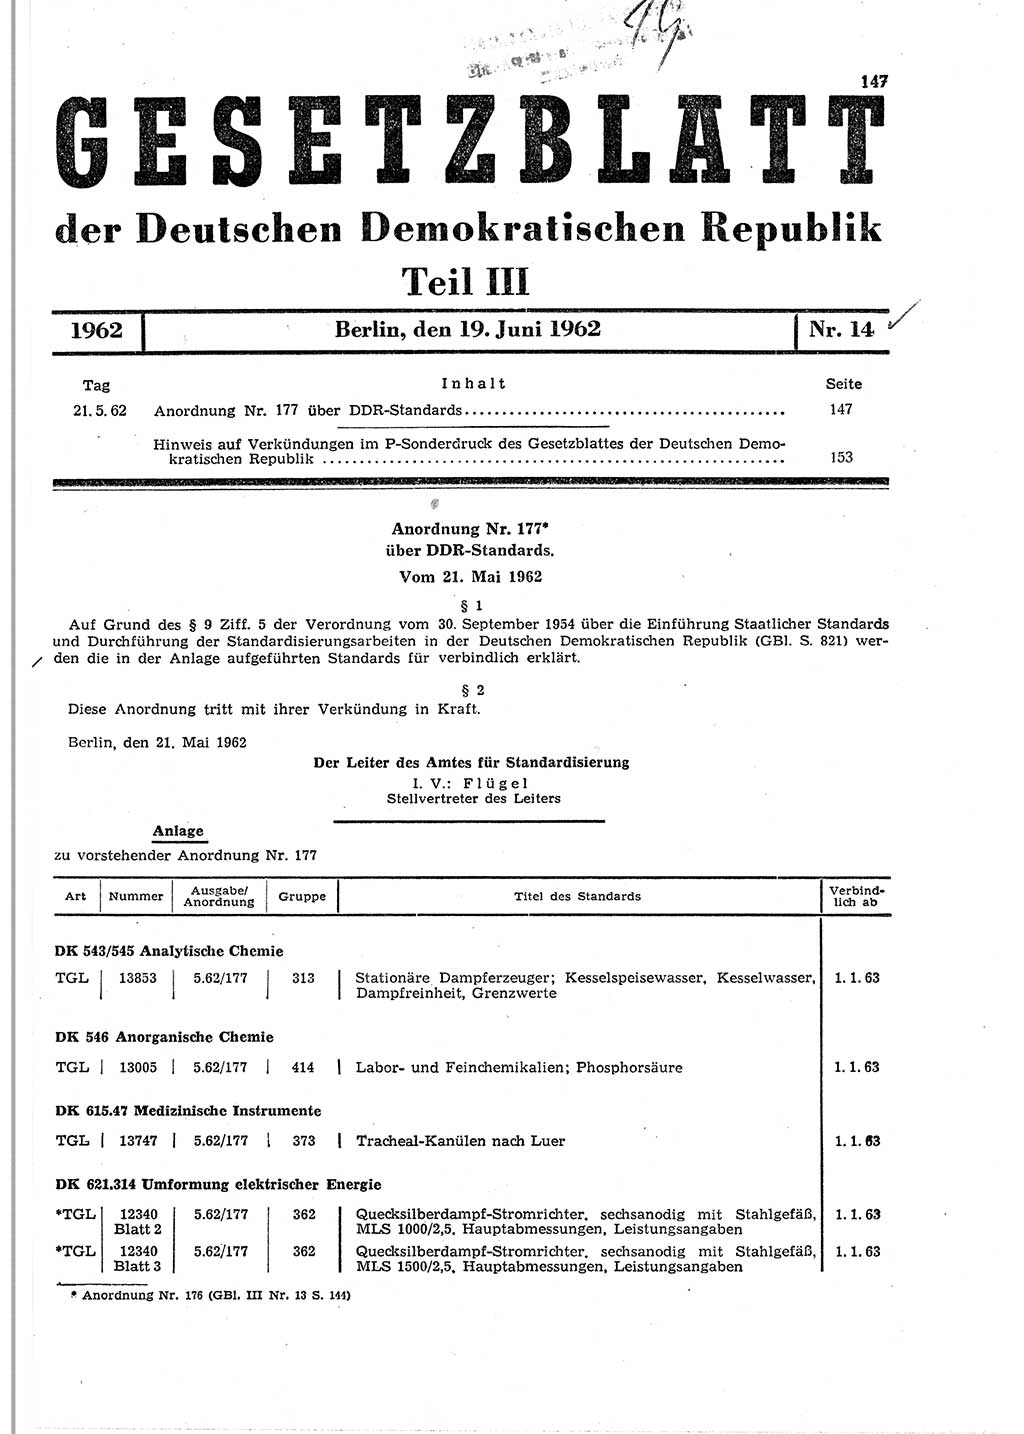 Gesetzblatt (GBl.) der Deutschen Demokratischen Republik (DDR) Teil ⅠⅠⅠ 1962, Seite 147 (GBl. DDR ⅠⅠⅠ 1962, S. 147)